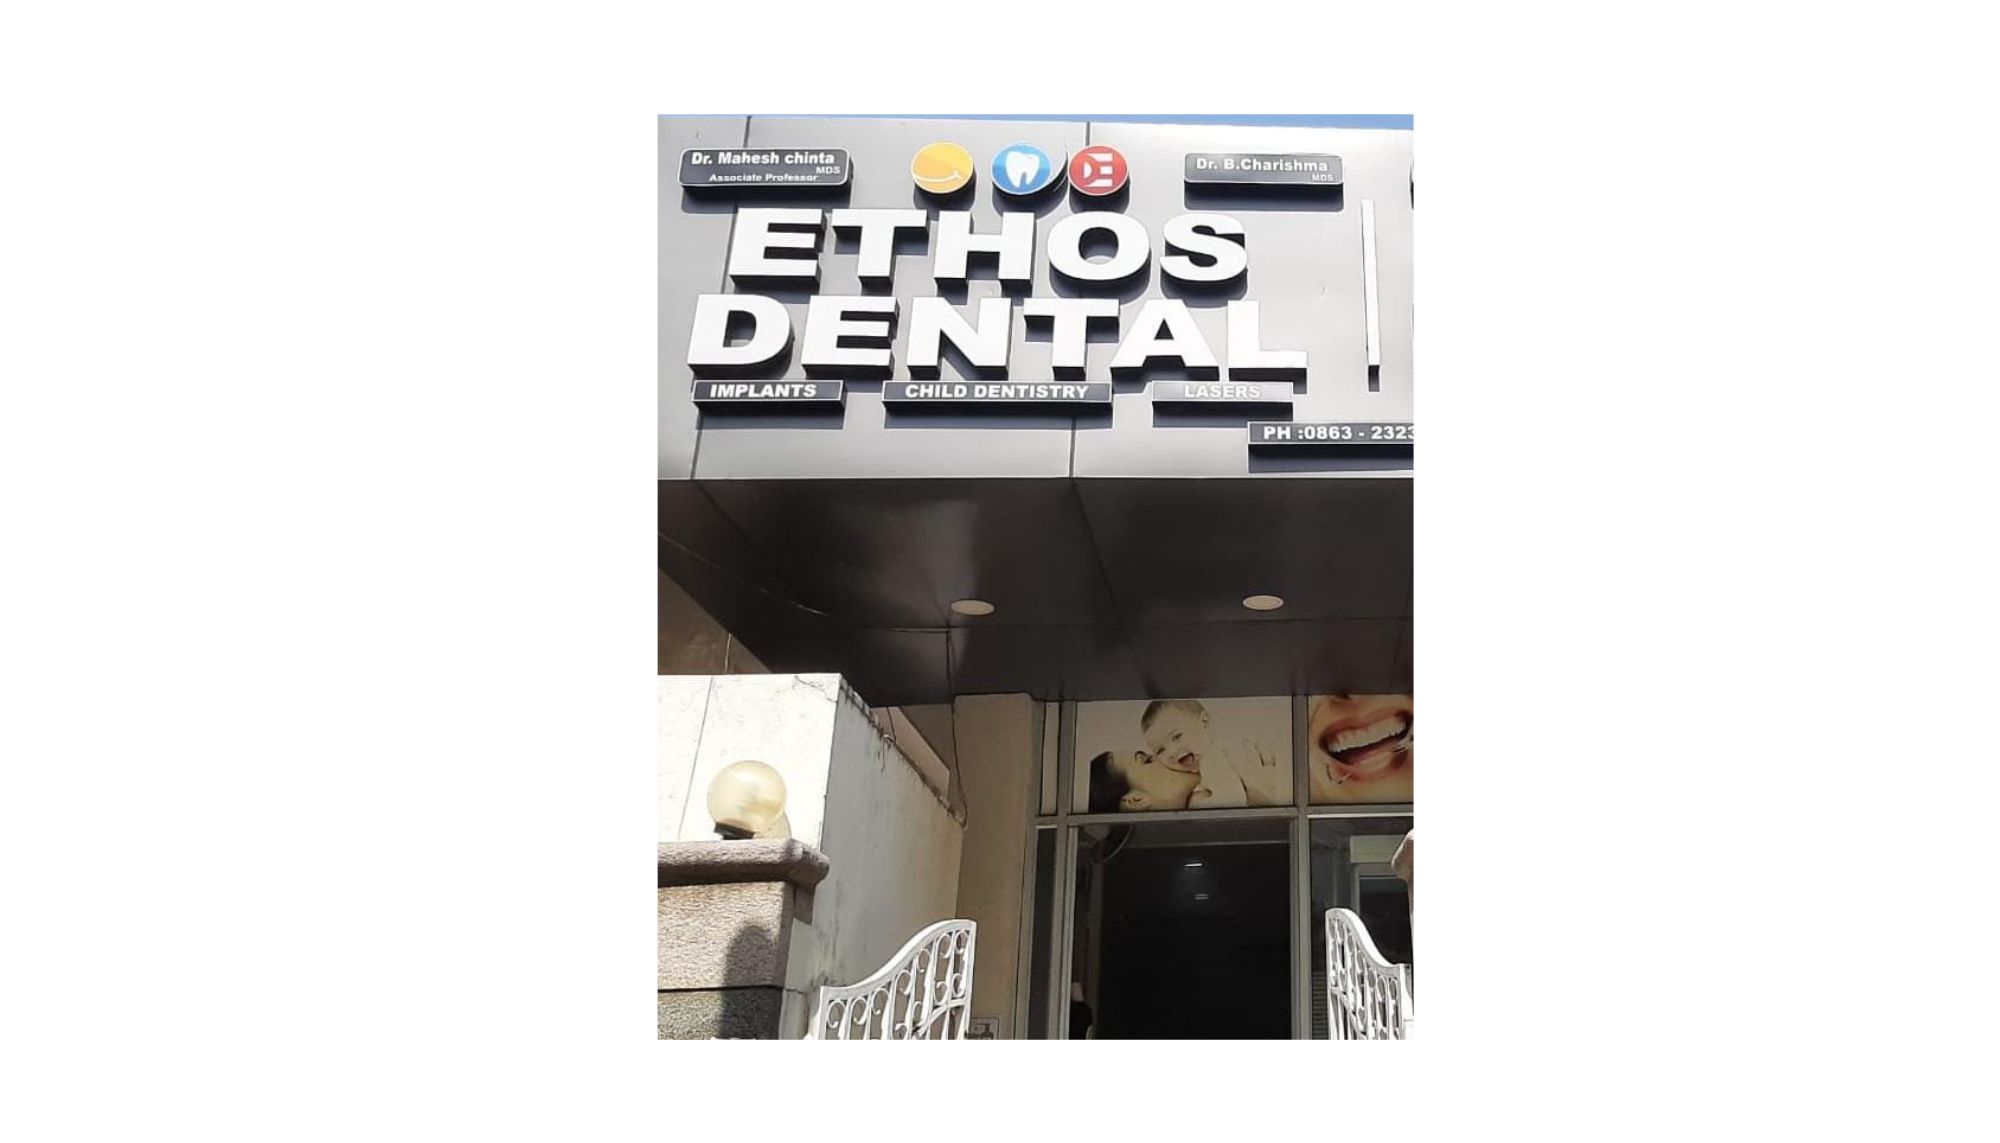 Our Happy Customer@ETHOS DENTAL